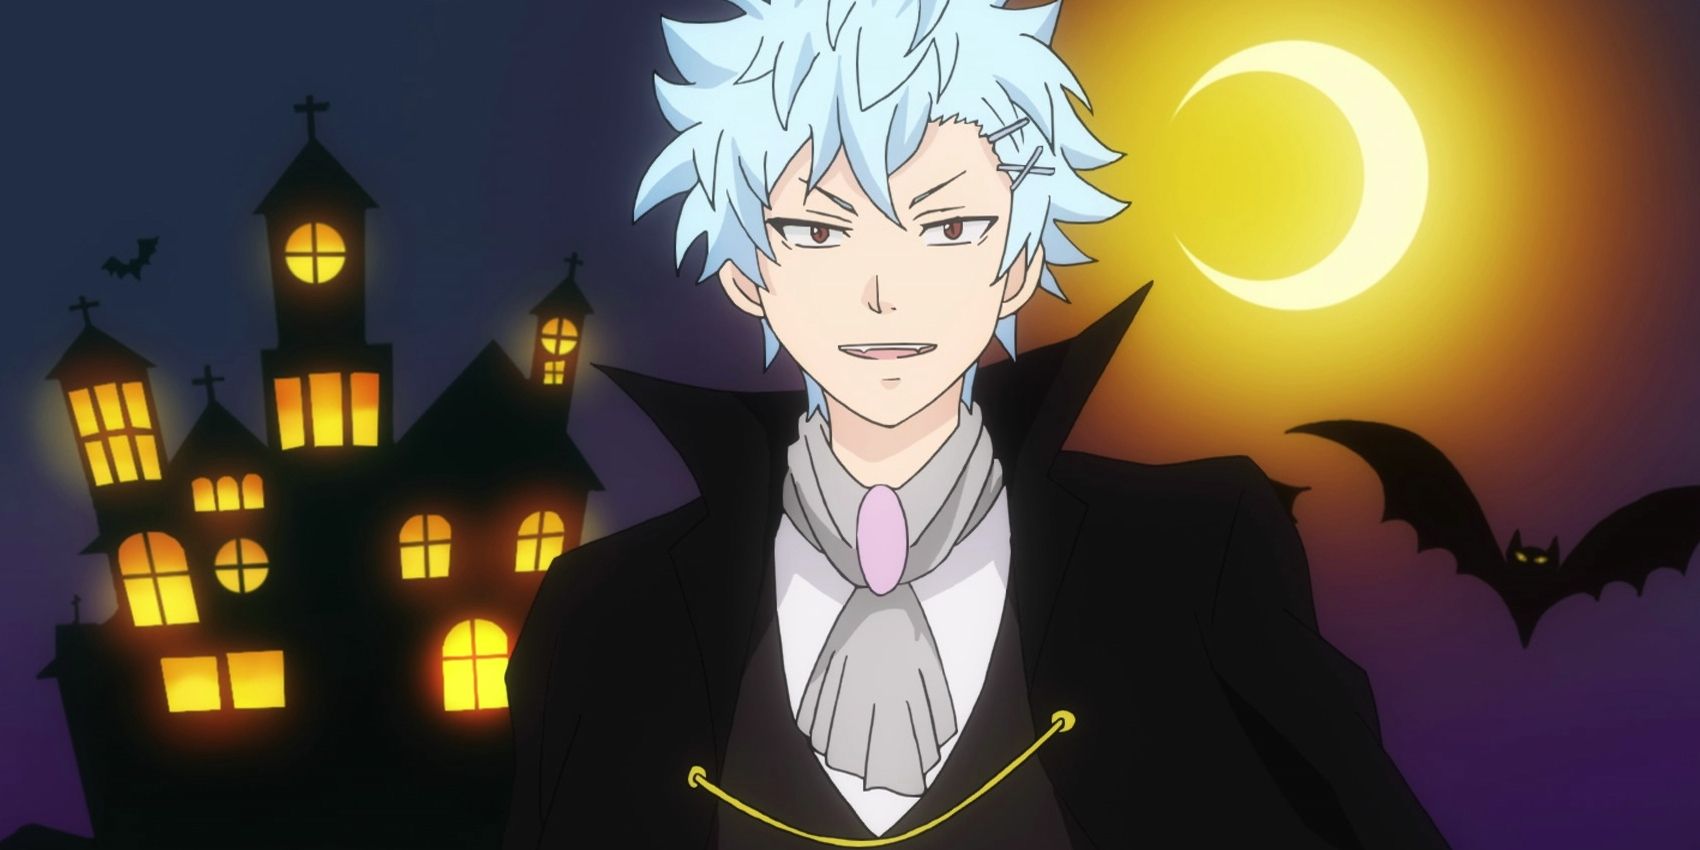 Shun dressed up as a vampire in Saiki K Season 1 Episode 23